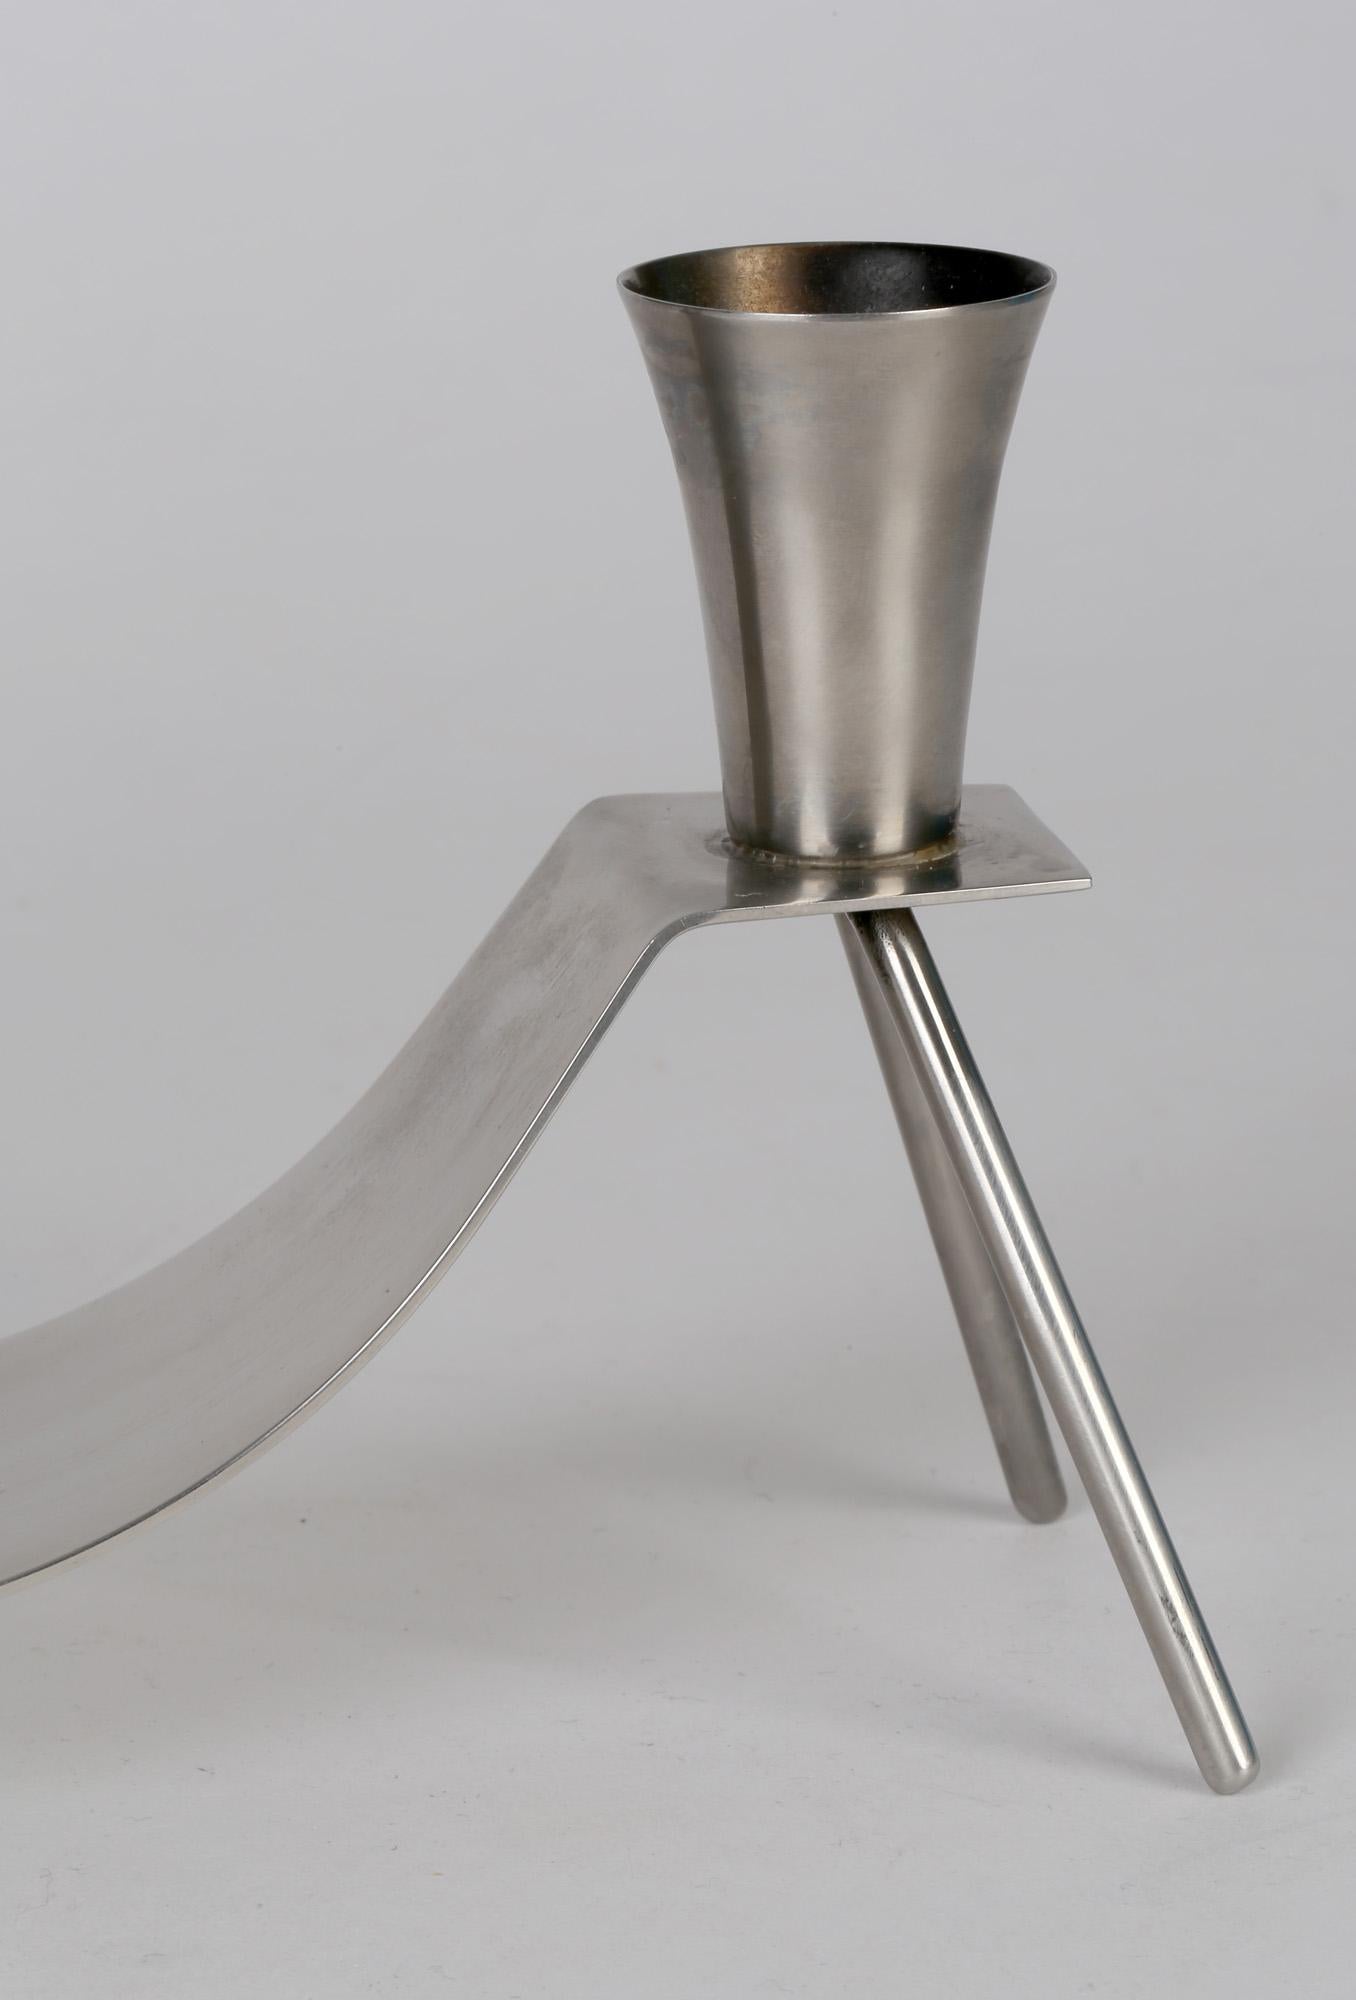 Un chandelier double en acier inoxydable brossé danois du milieu du siècle, très élégant, par Dana. Le chandelier jumeau est monté sur une tôle d'acier plate façonnée reposant sur quatre pieds de type trépied. Ce design simple mais très efficace est